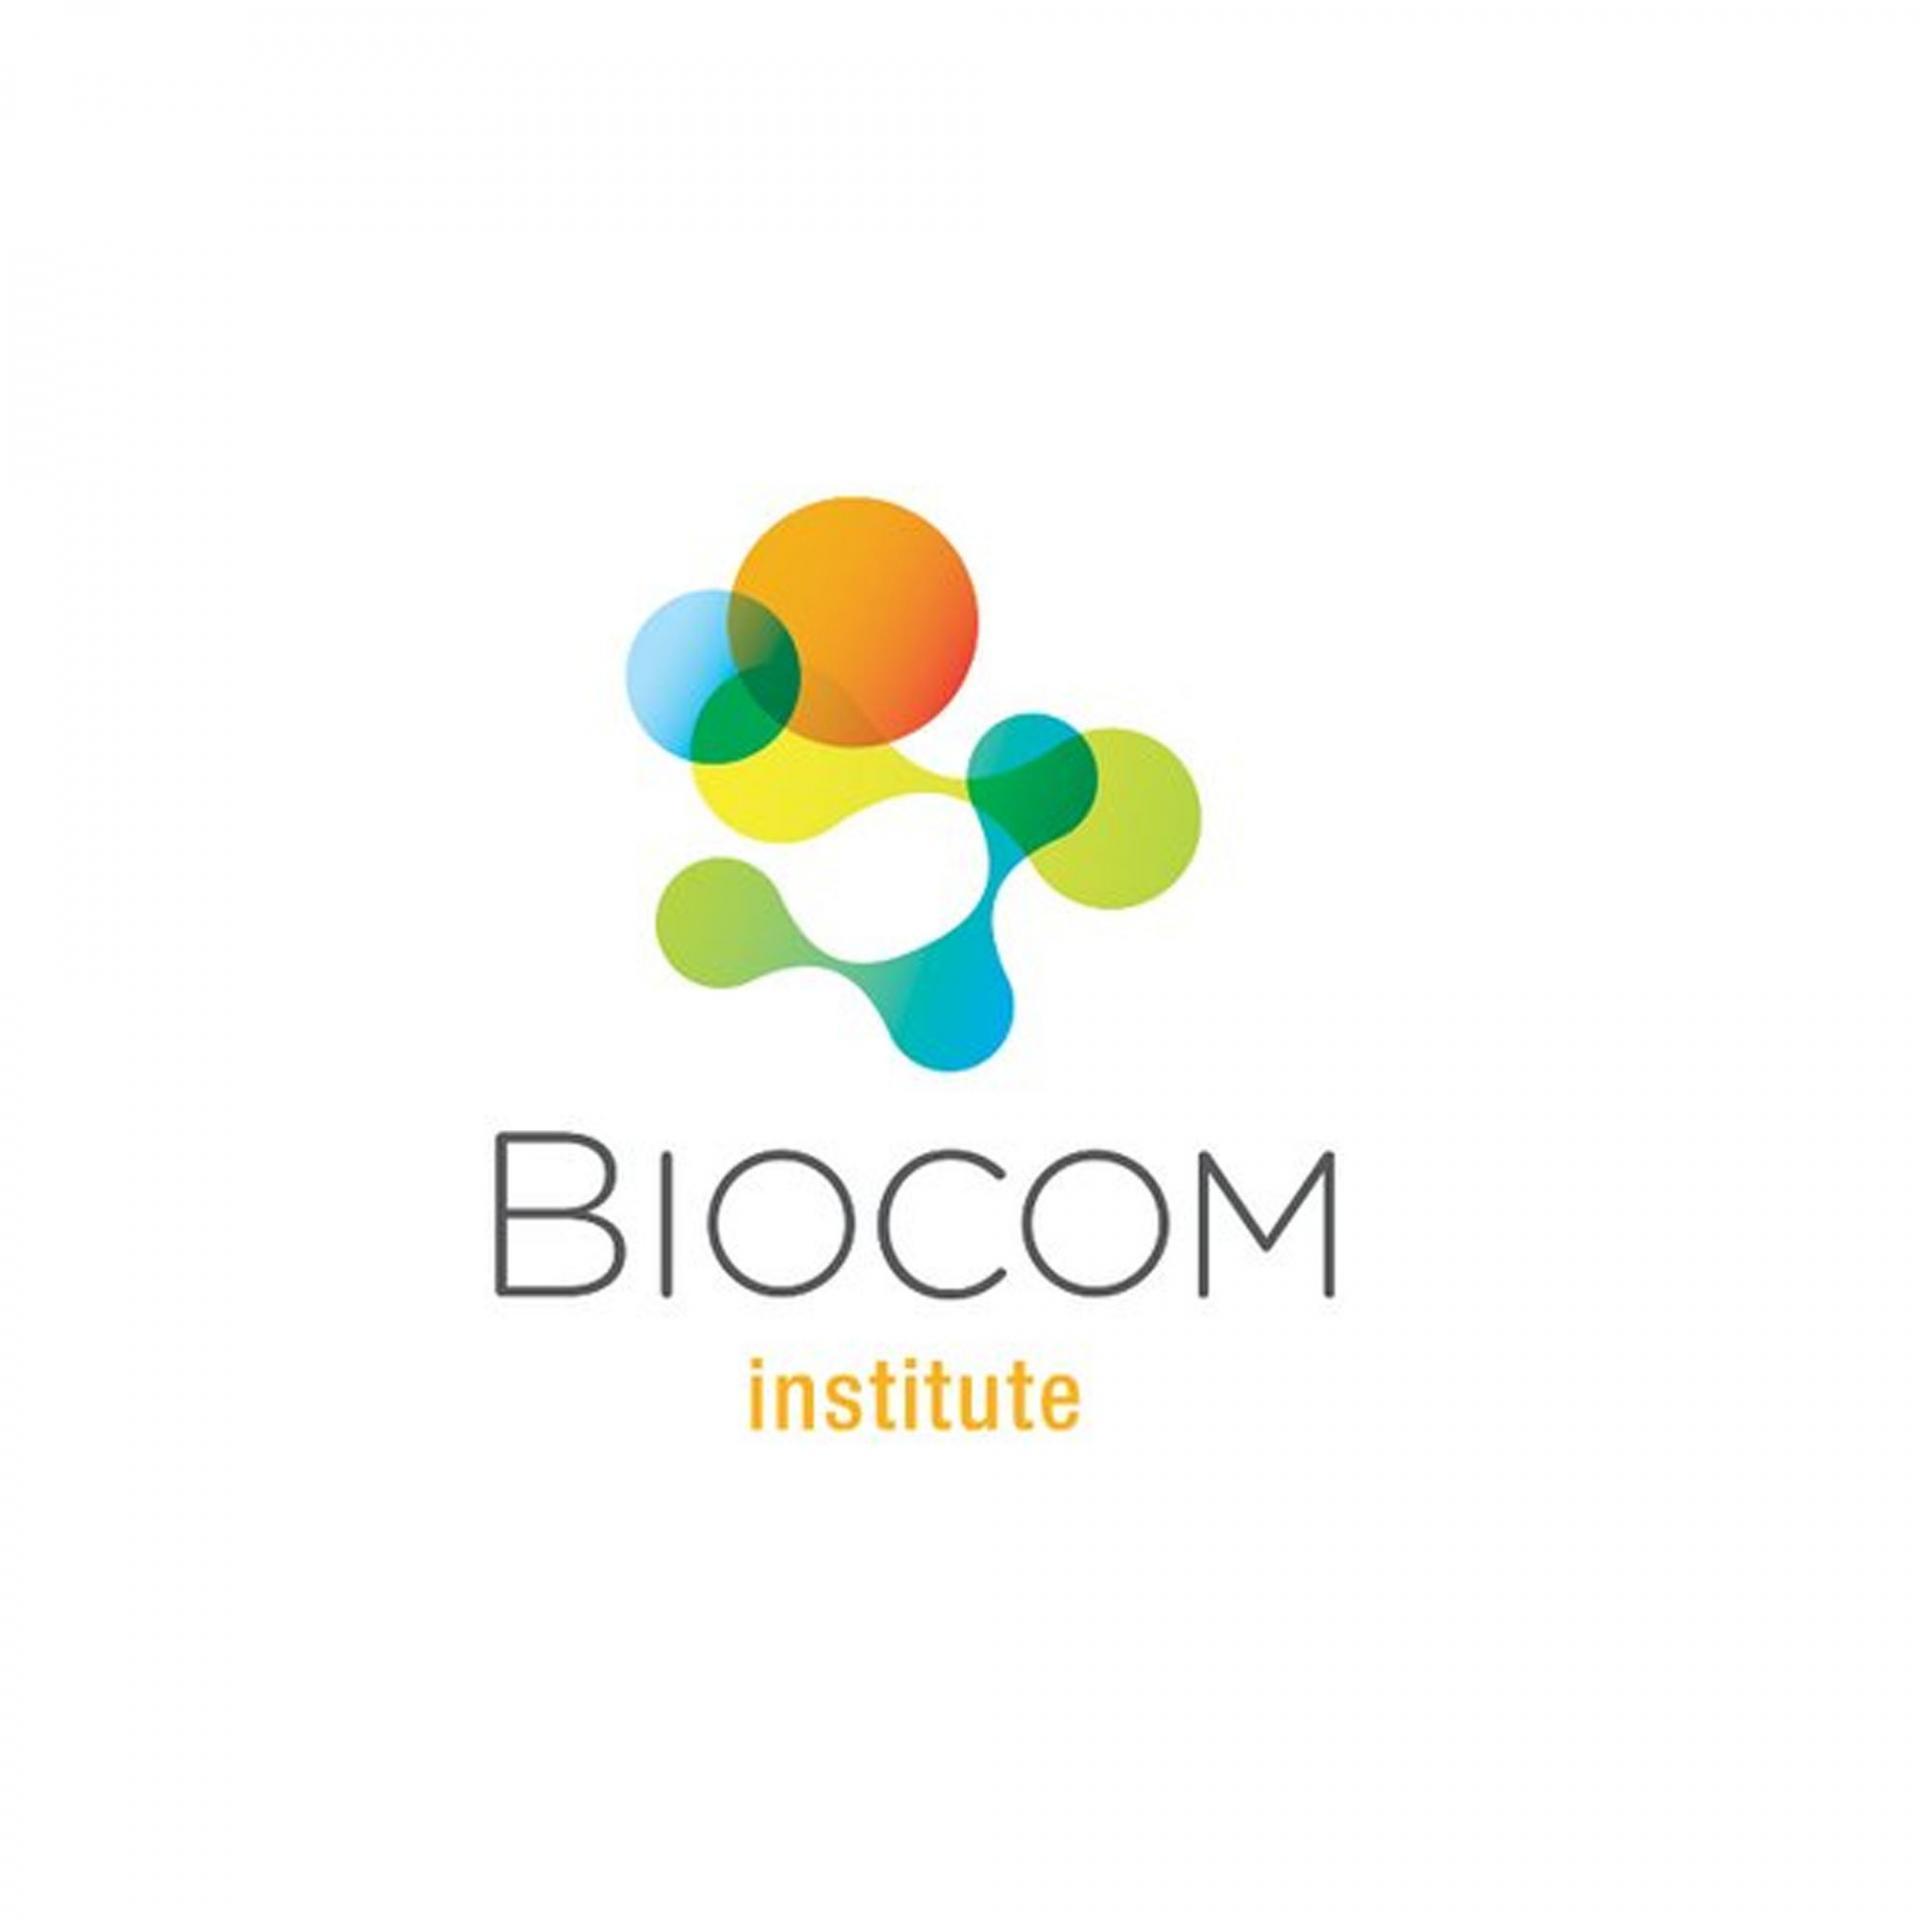 Biocom Institute logo